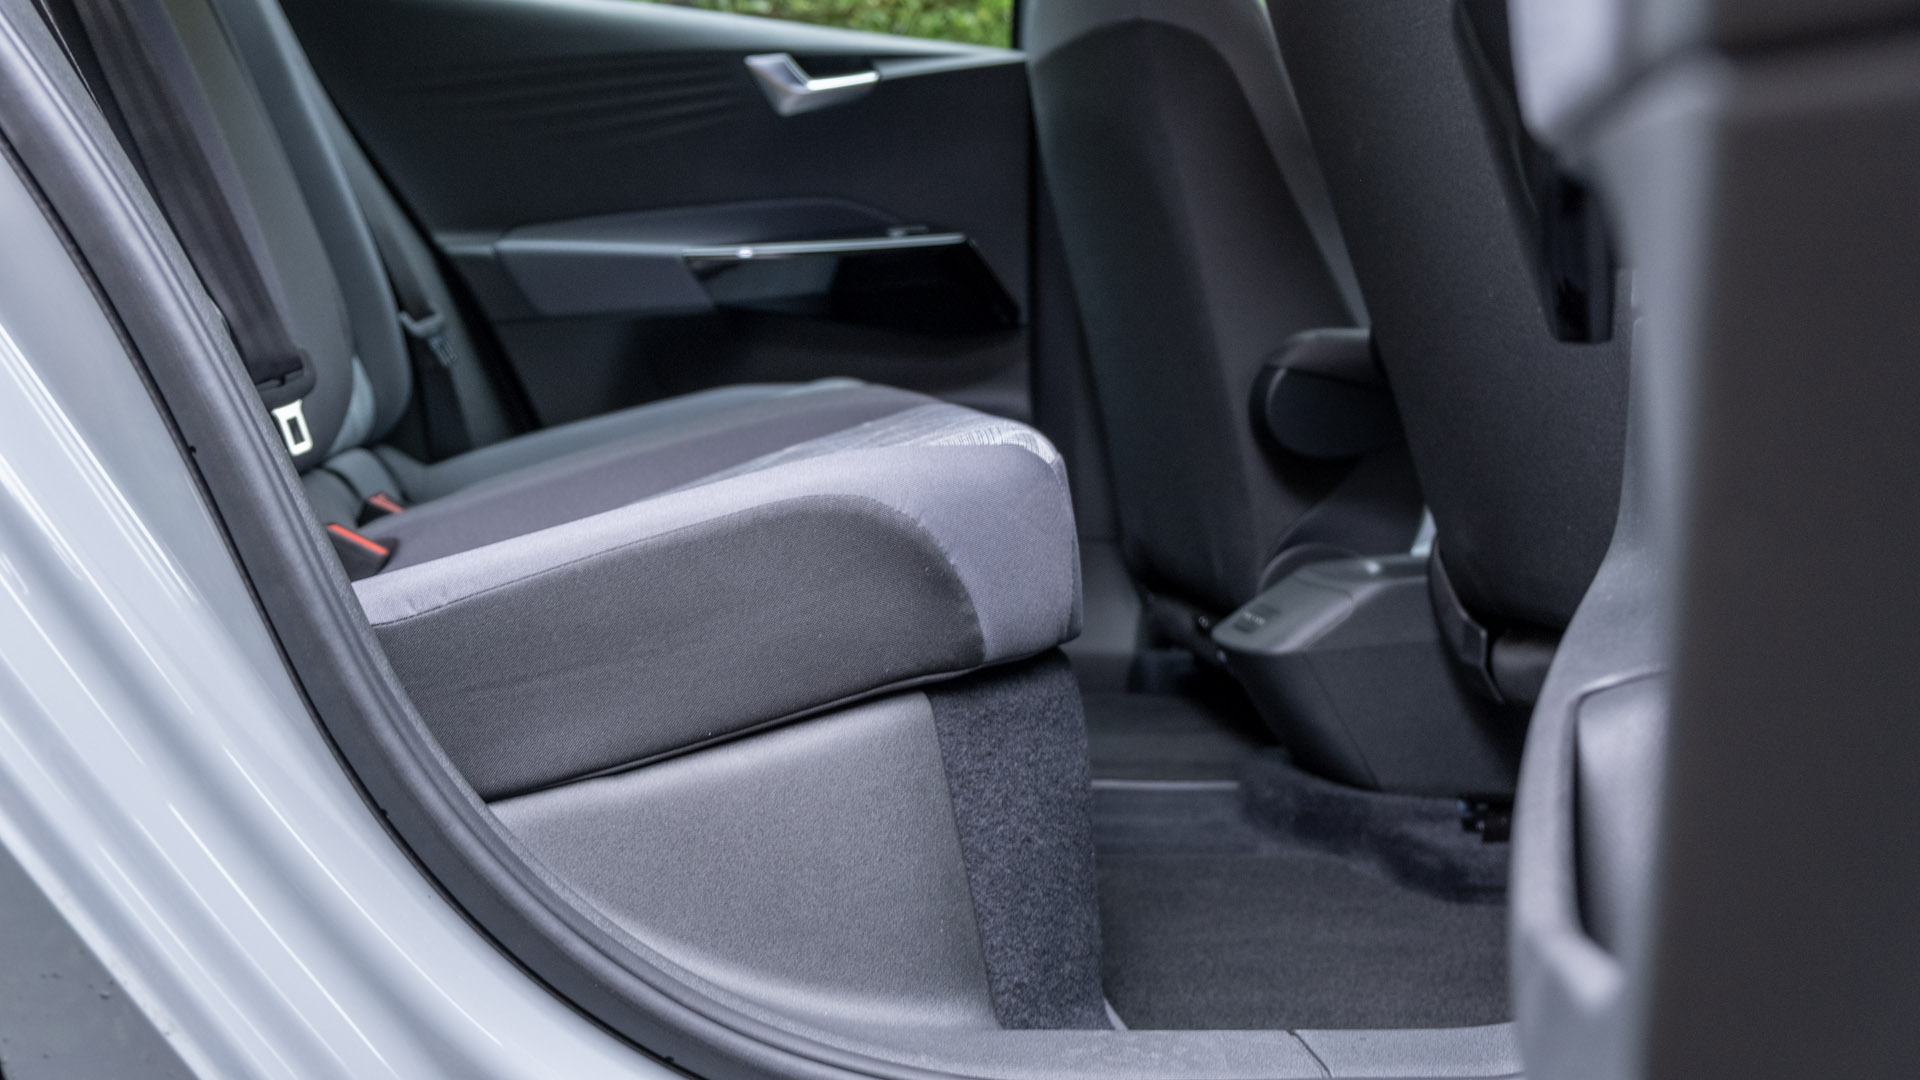 Volkswagen ID.3 rear seat comfort